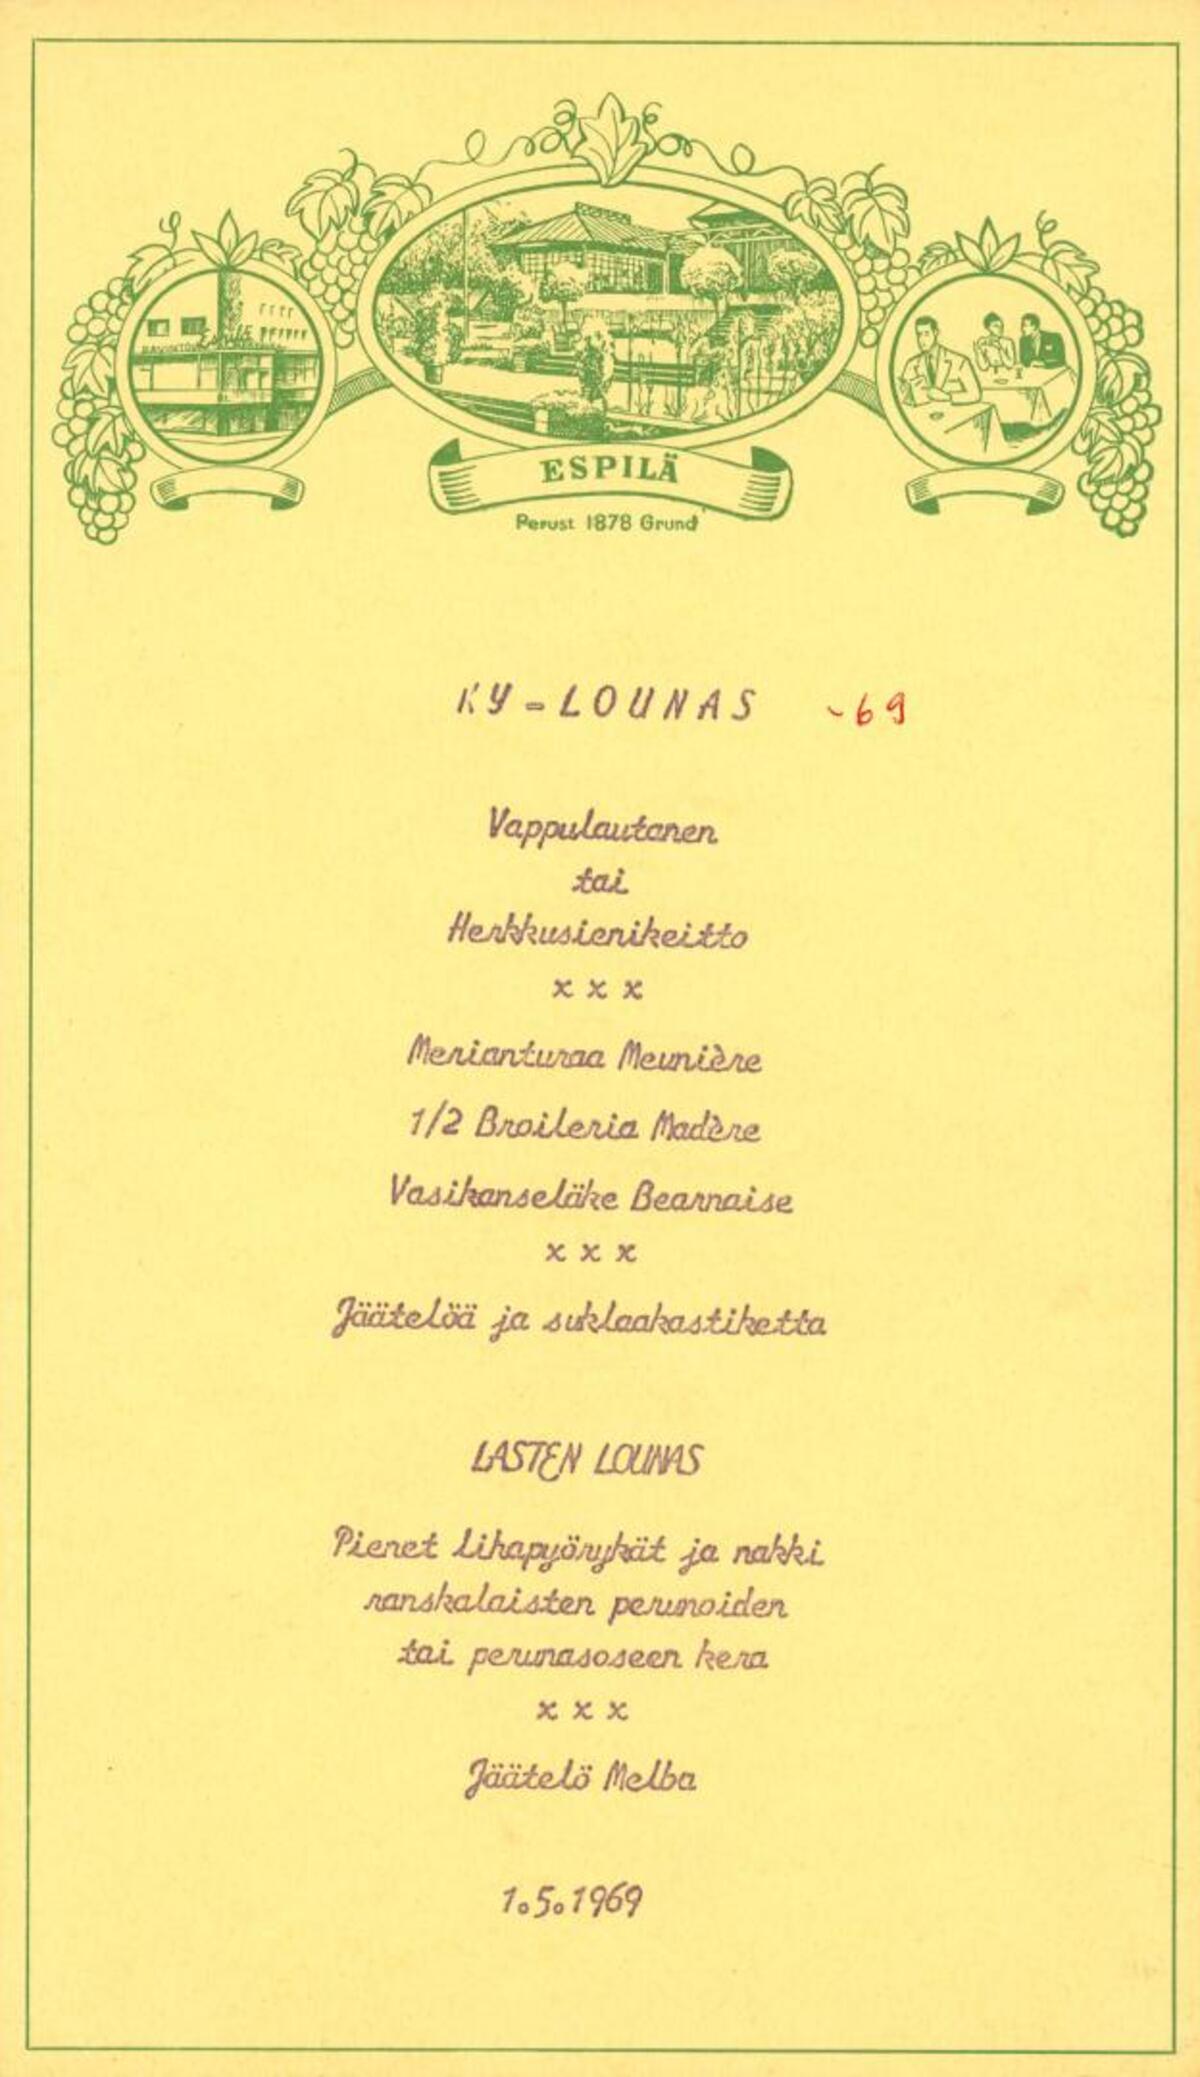 Finskspråkig meny 1.5.1969, Espilä, Helsinki; KY-lounas